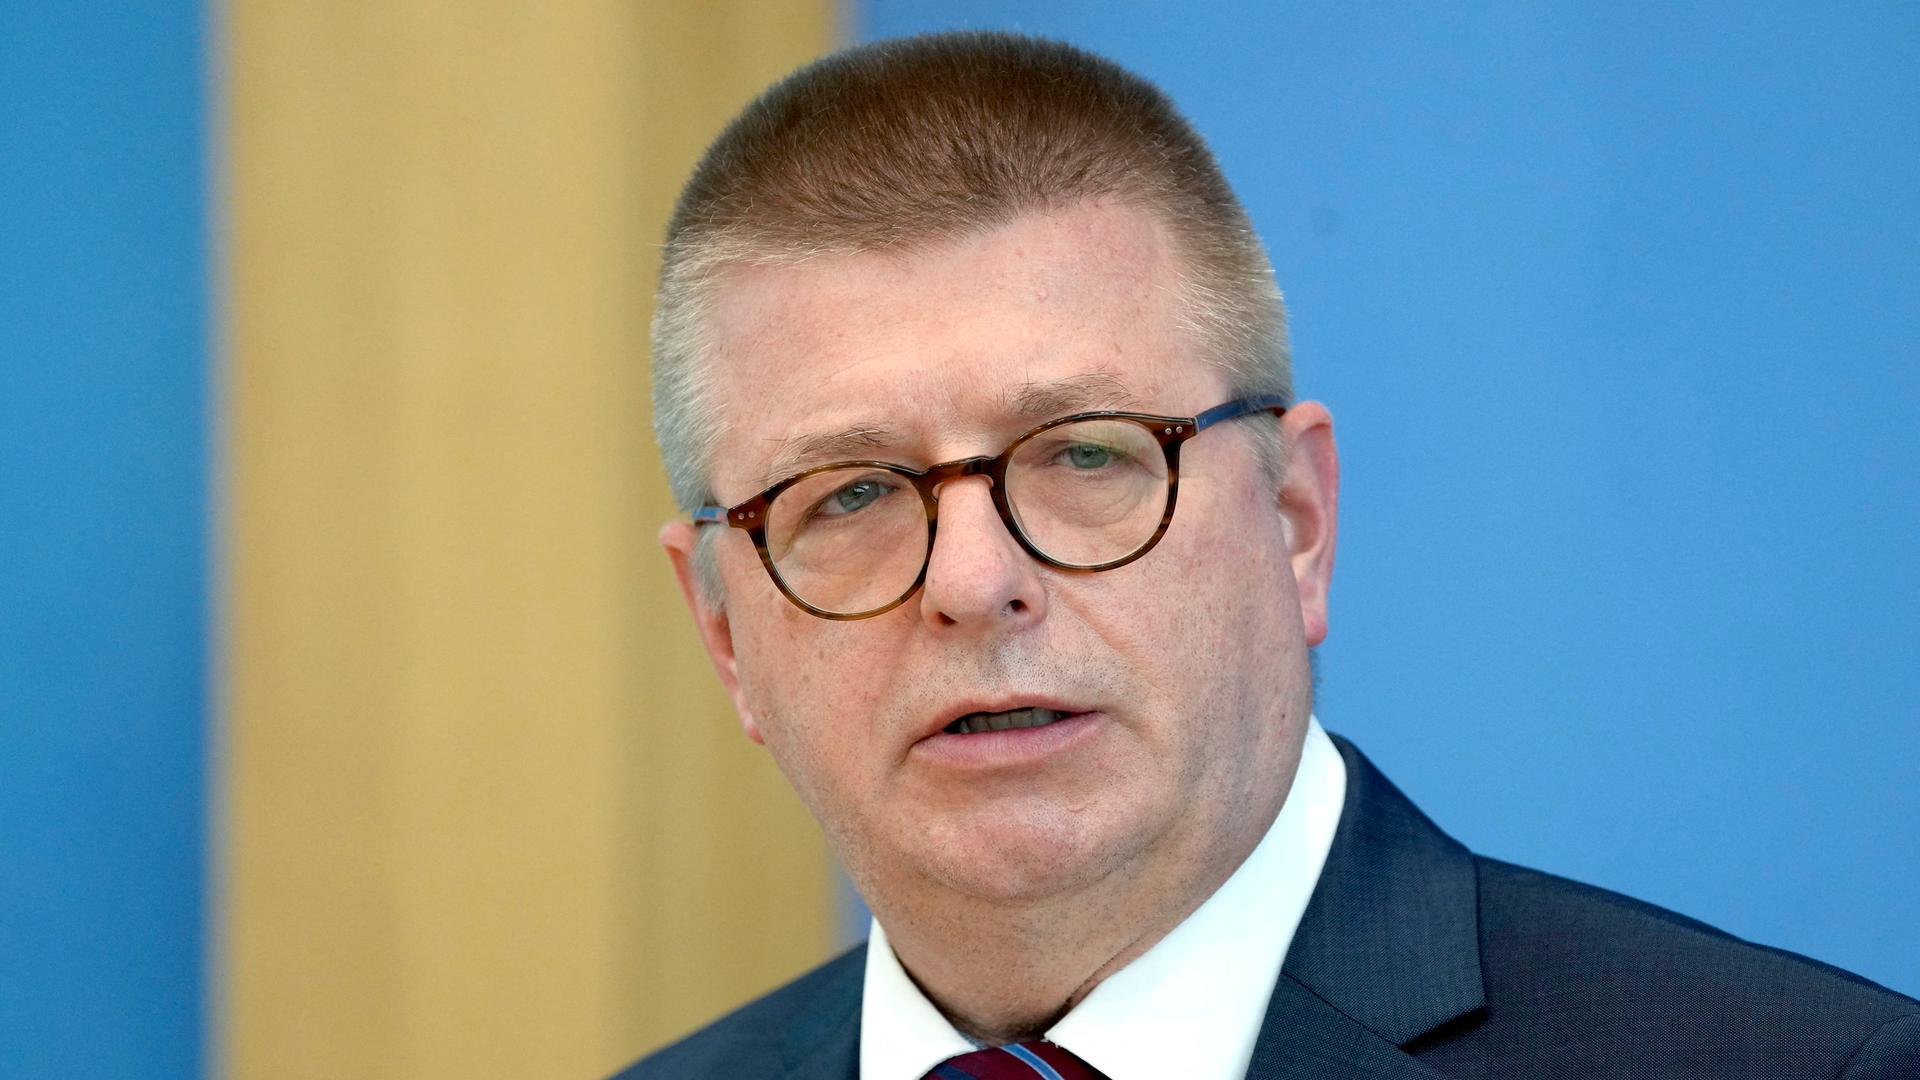 Interview der Woche - Verfassungsschutzpräsident Haldenwang grenzt sich von Vorgänger Maaßen ab